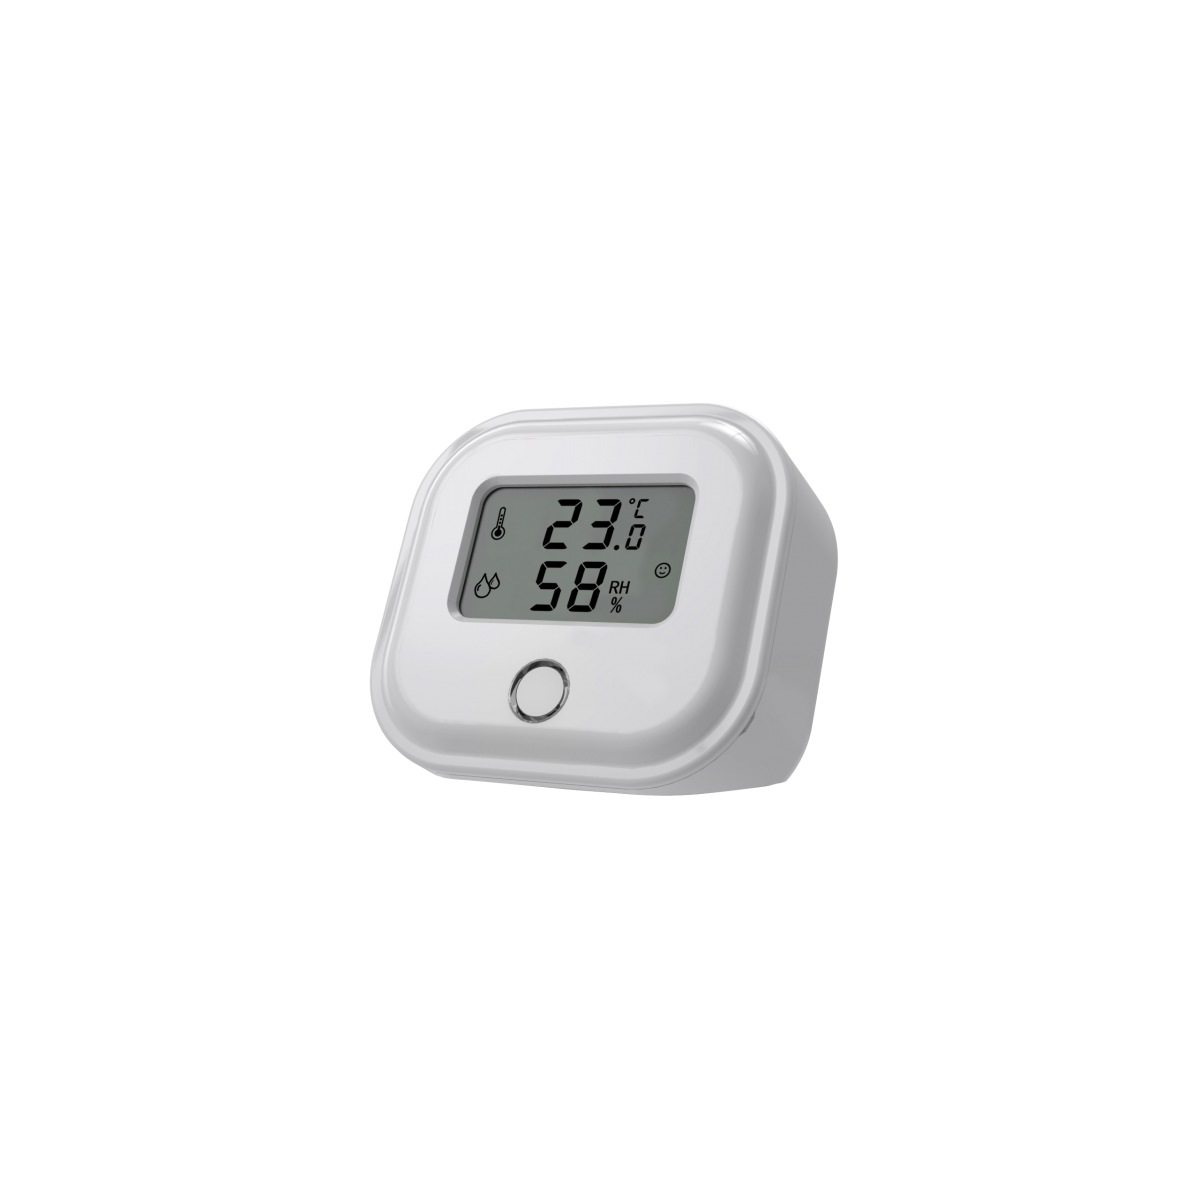 Thermomètre extérieur autocollant pour fenêtres, portes et fenêtres -  transparent - étanche - batterie non incluse